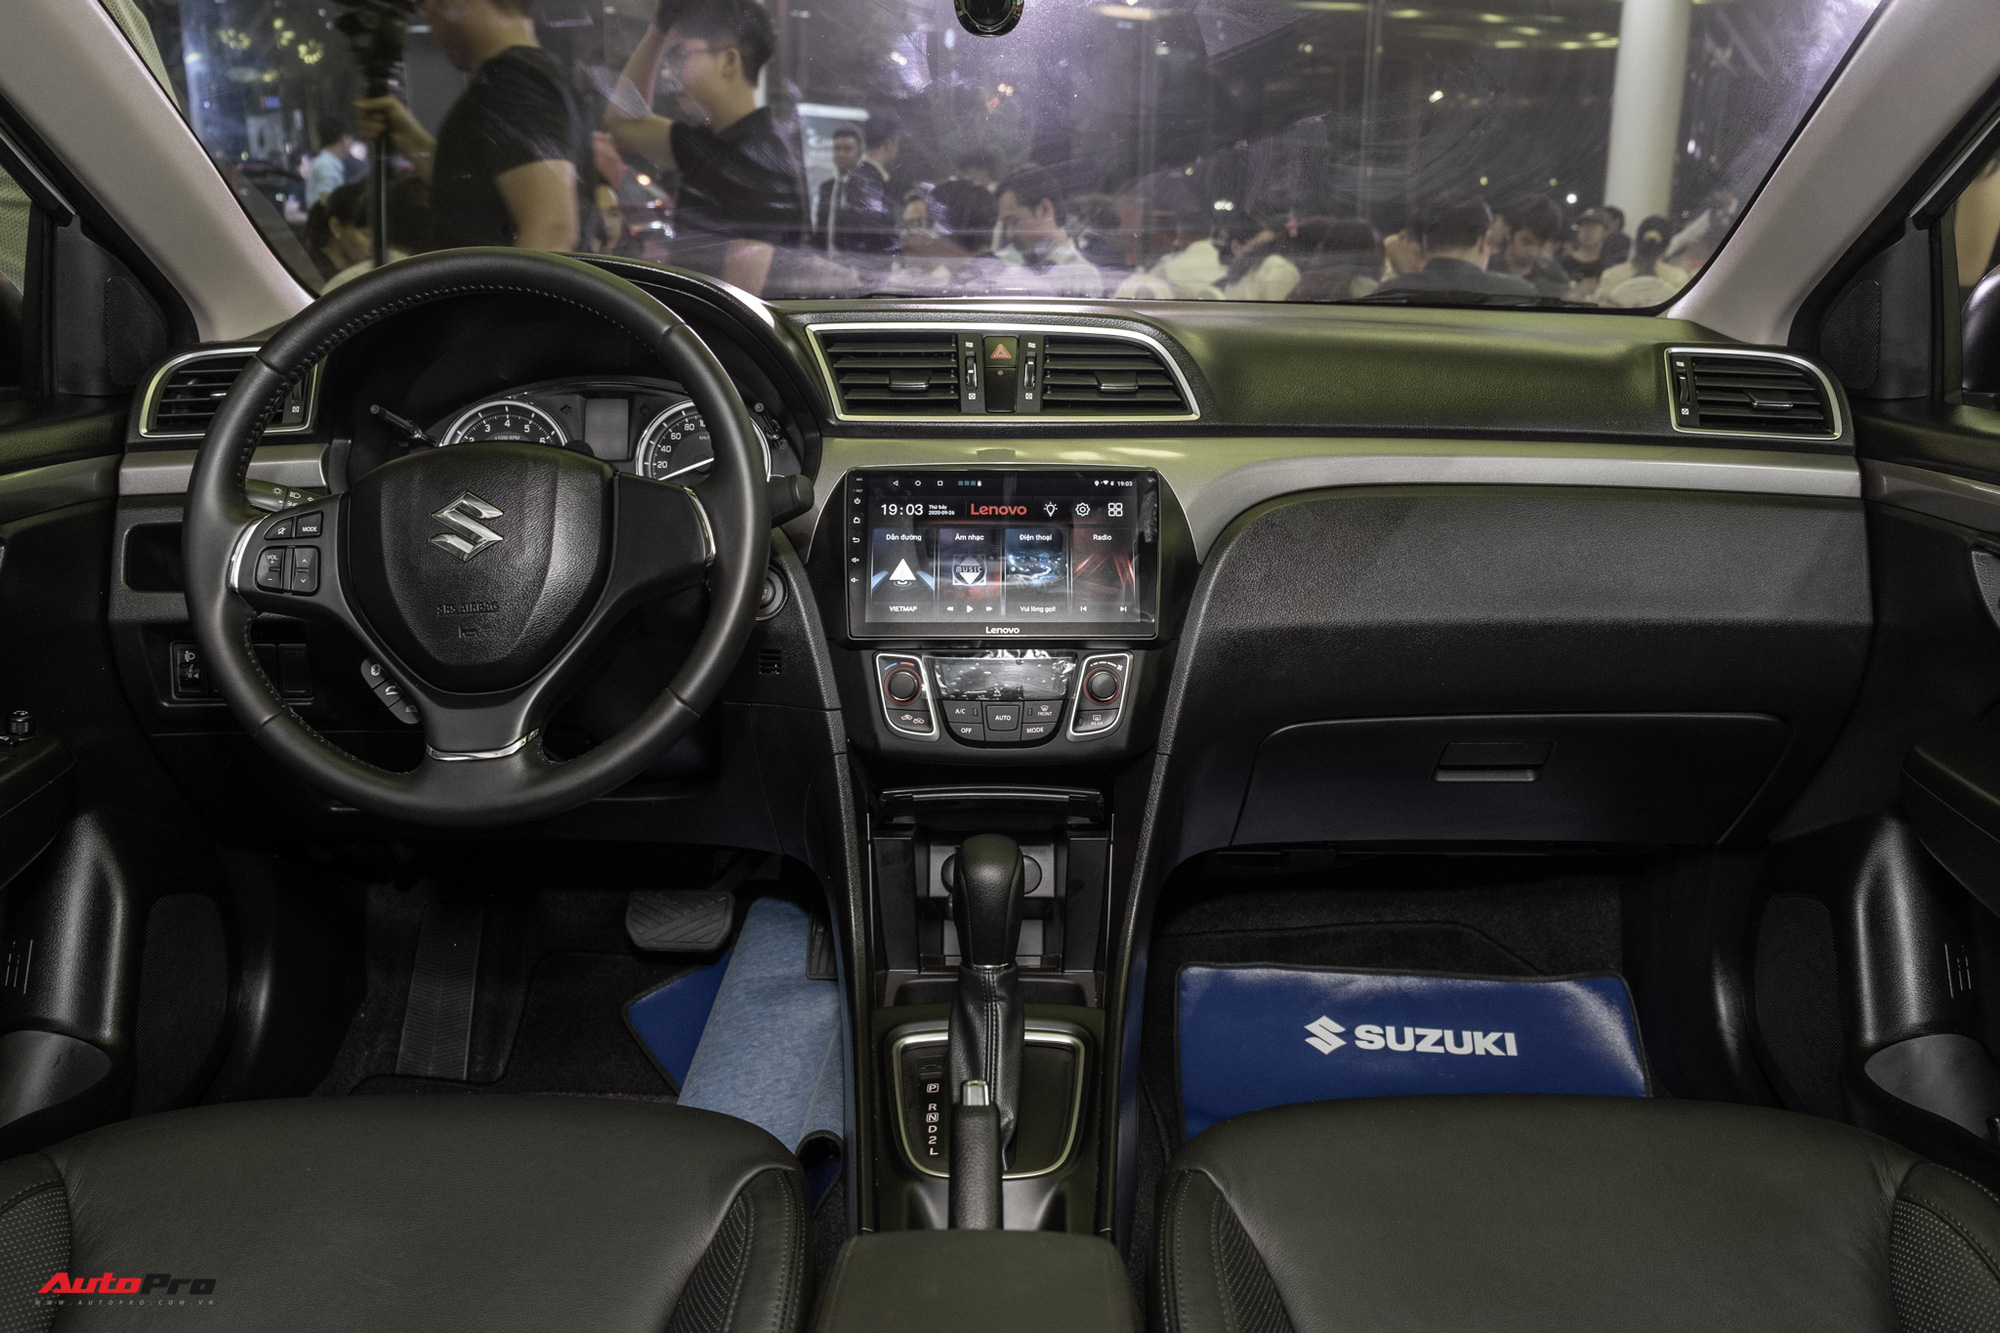 Khám phá Suzuki Ciaz 2020 giá 529 triệu đồng tại Việt Nam: Thiếu nhiều tính năng cơ bản - Ảnh 7.